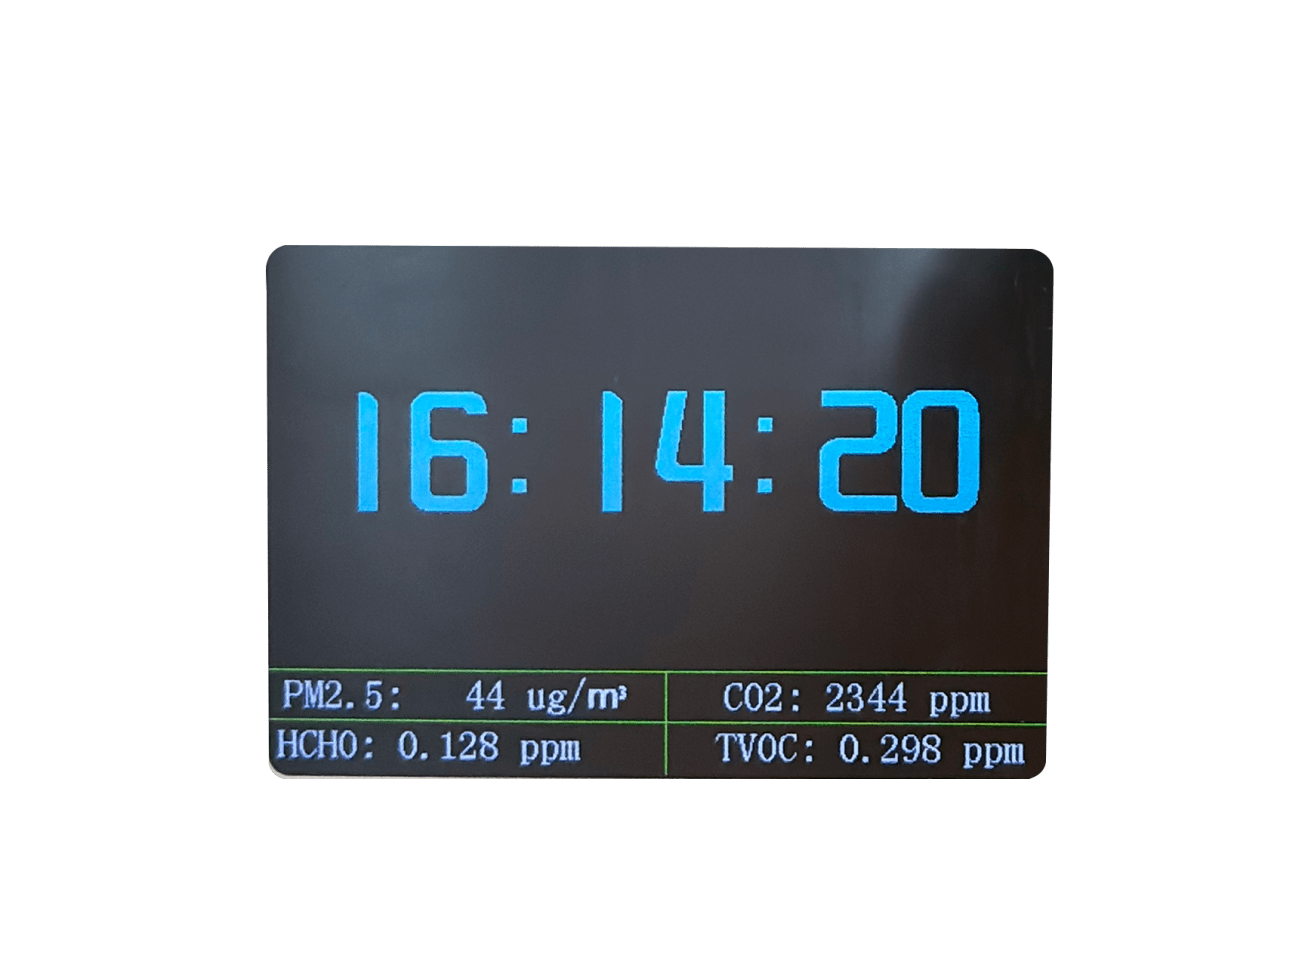 prana air cair air quality monitor clock screen